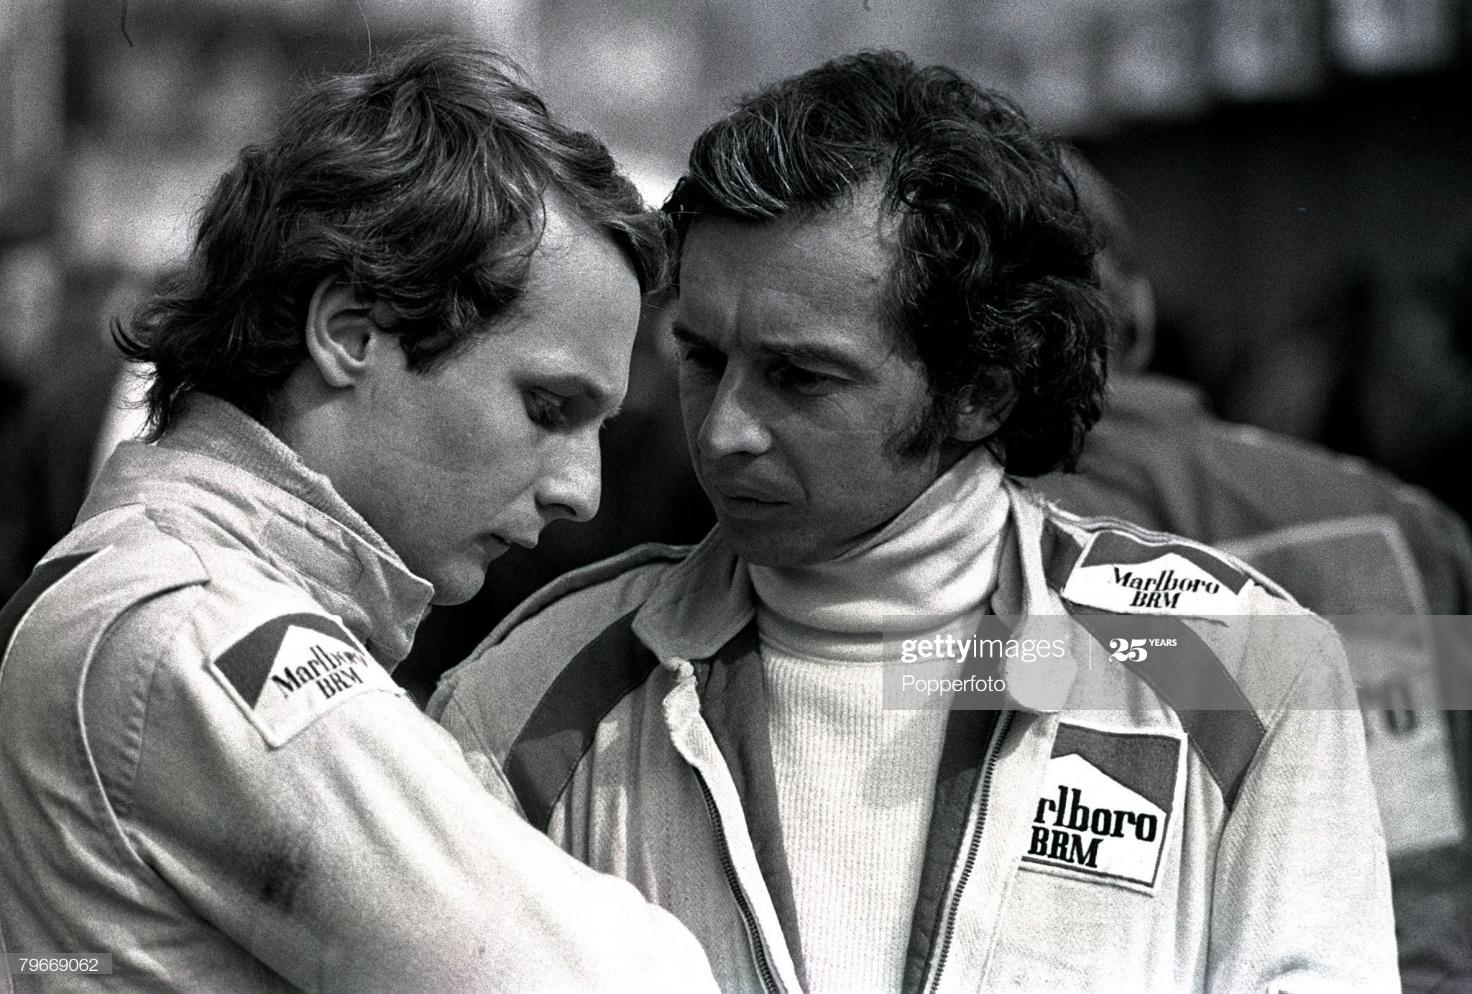 Jean Pierre Beltoise and Niky Lauda.